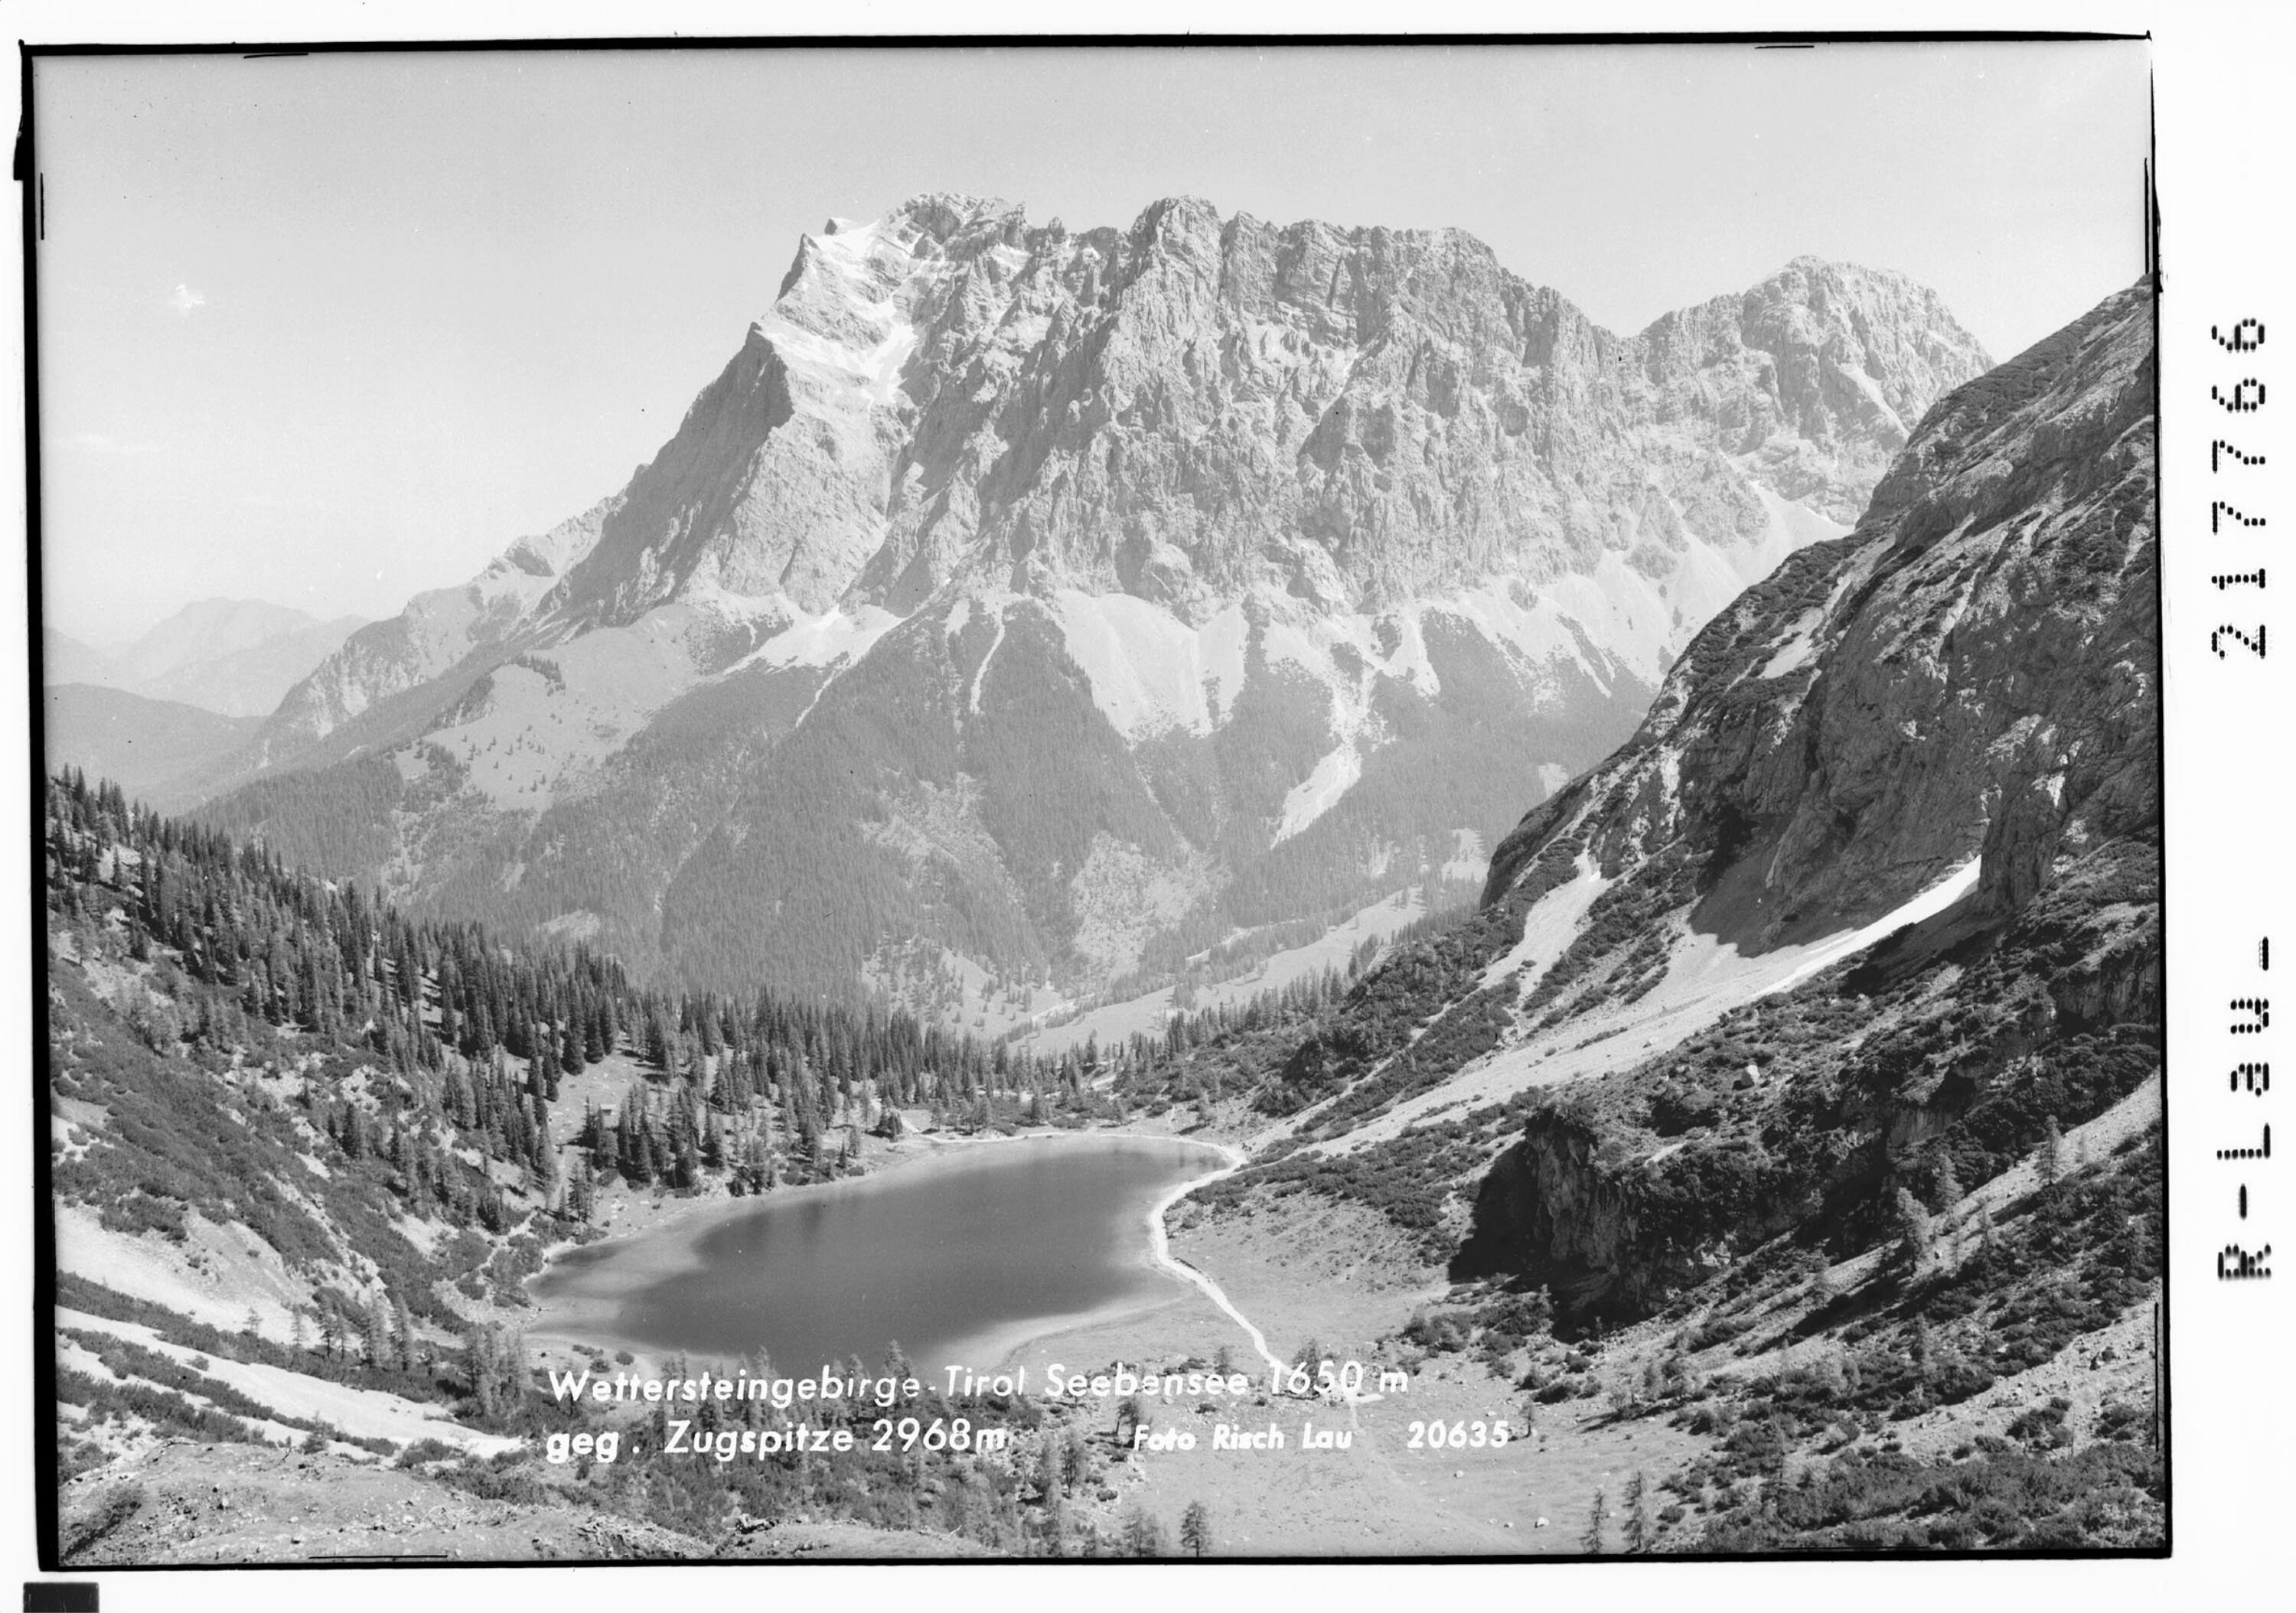 Wettersteingebirge - Tirol Seebensee 1650 m gegen Zugspitze 2968 m></div>


    <hr>
    <div class=